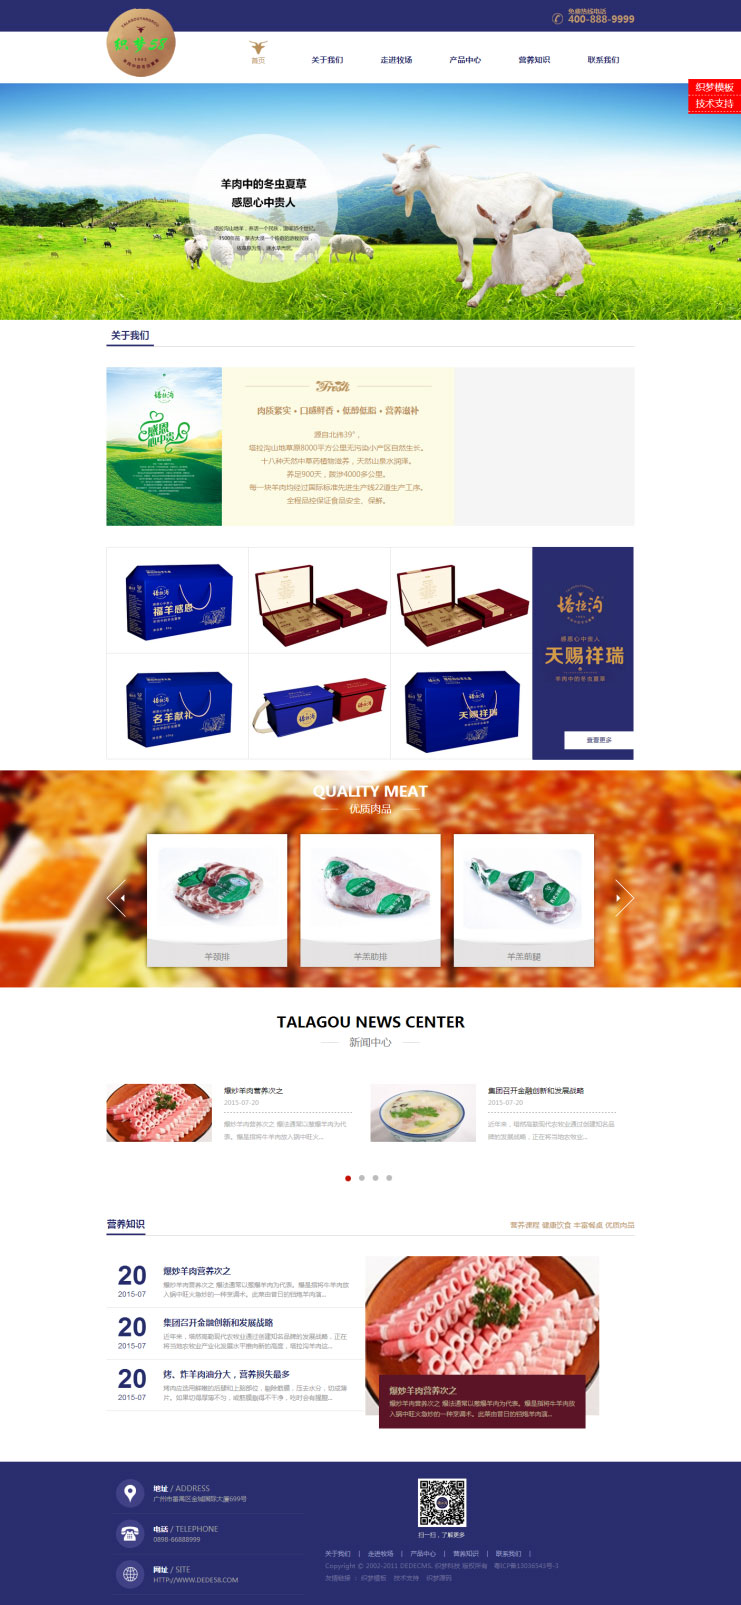 [企业源码]织梦dedecms简洁大气食品餐饮美食行业企业网站模板插图